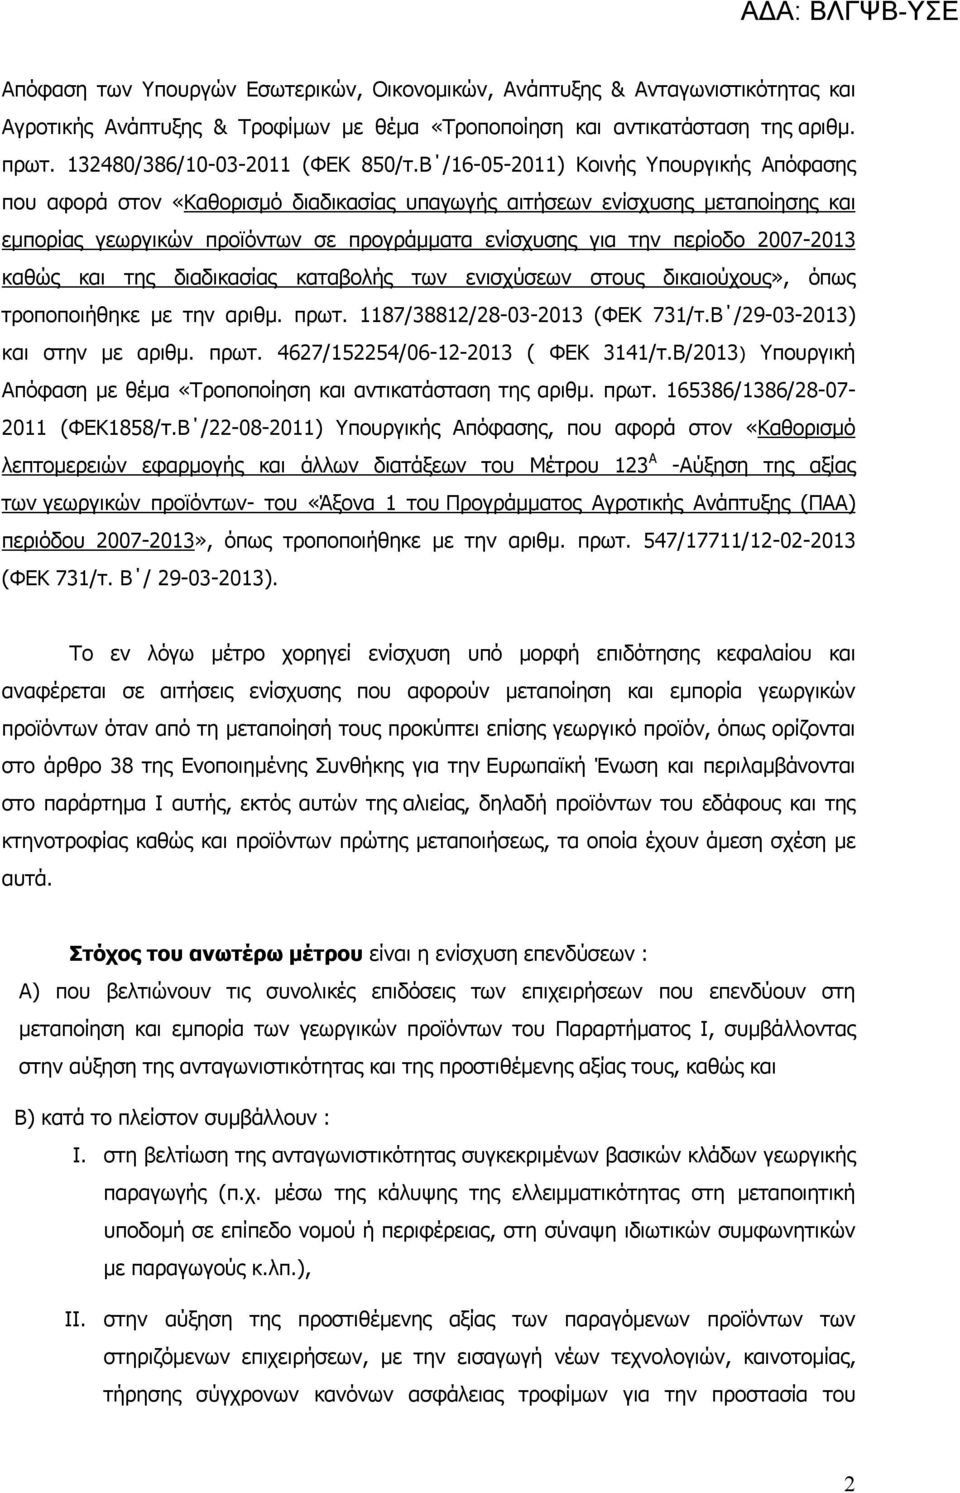 Β /16-05-2011) Κοινής Υπουργικής Απόφασης που αφορά στον «Καθορισμό διαδικασίας υπαγωγής αιτήσεων ενίσχυσης μεταποίησης και εμπορίας γεωργικών προϊόντων σε προγράμματα ενίσχυσης για την περίοδο